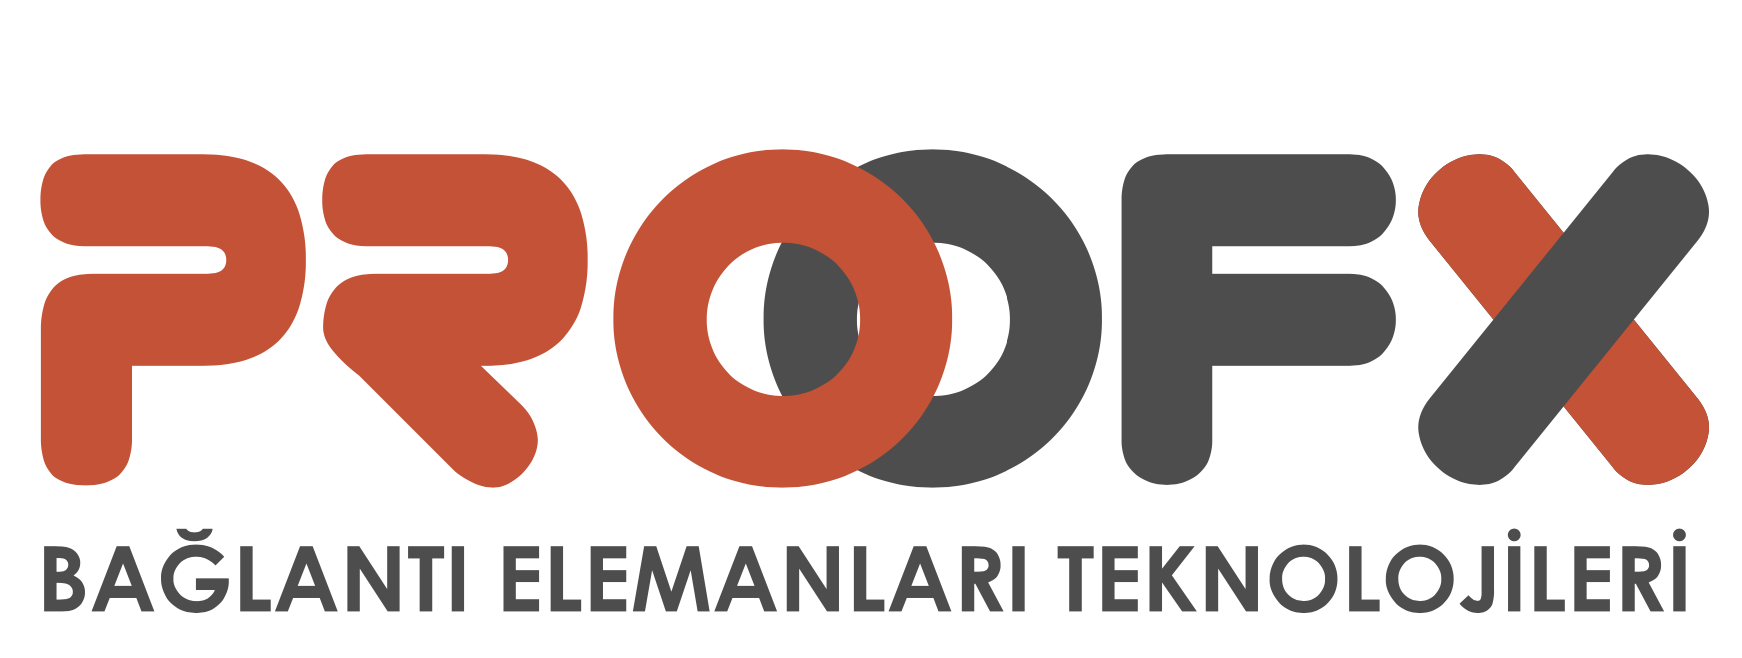 proofx logo